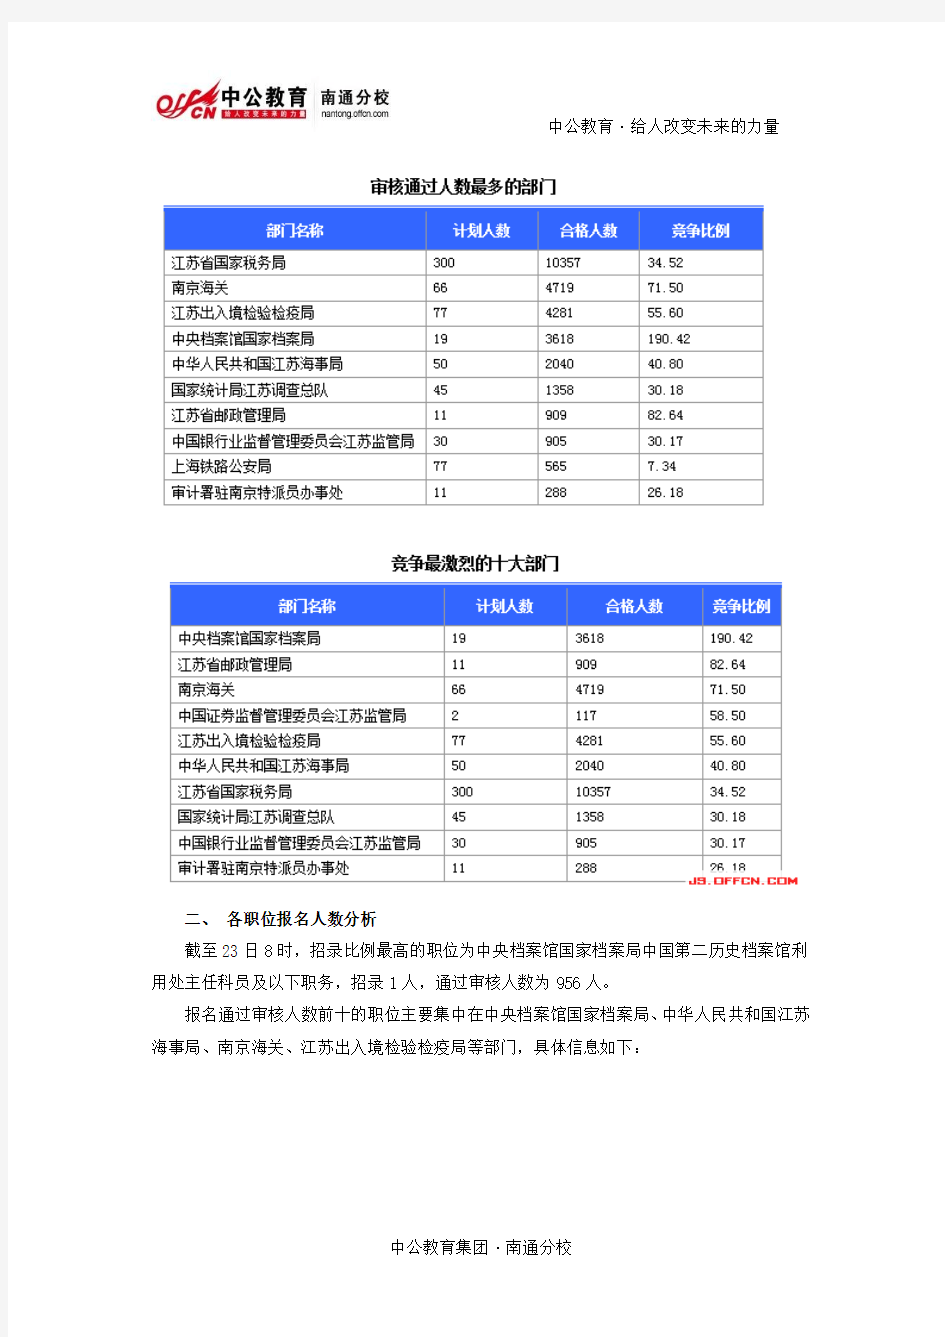 [截至23日8时]2015国考报名江苏审核人数达29740人 最热职位9561